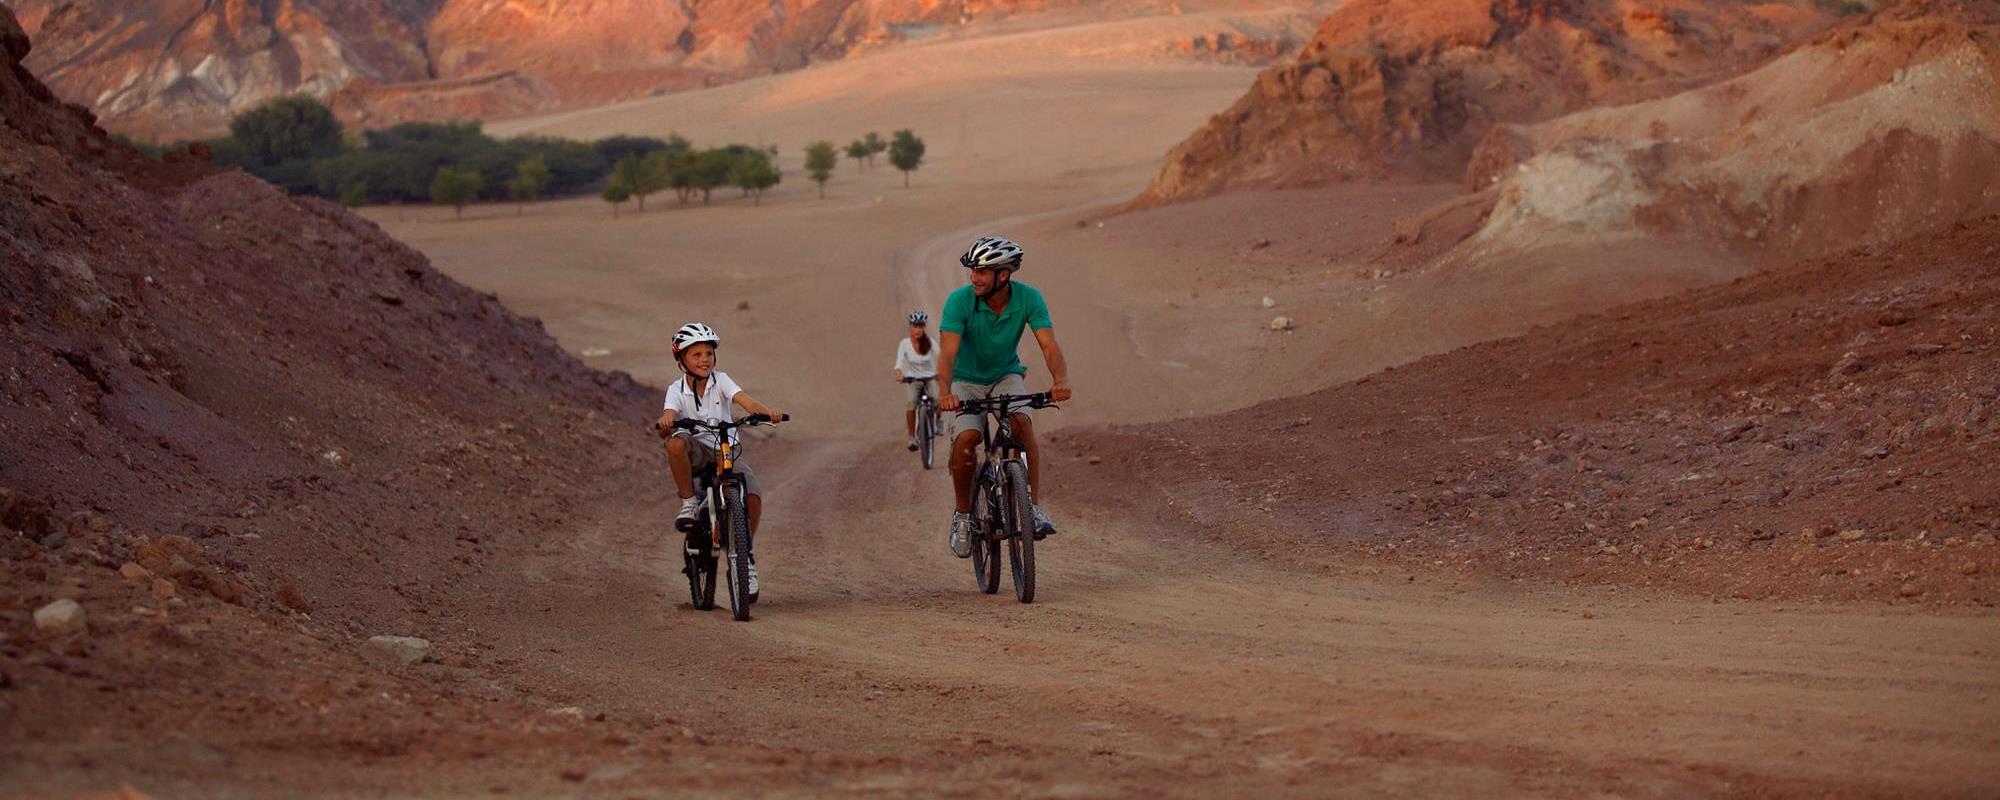 جولة سياحية في أبوظبي (3) ركوب الدراجة الهوائية زووم